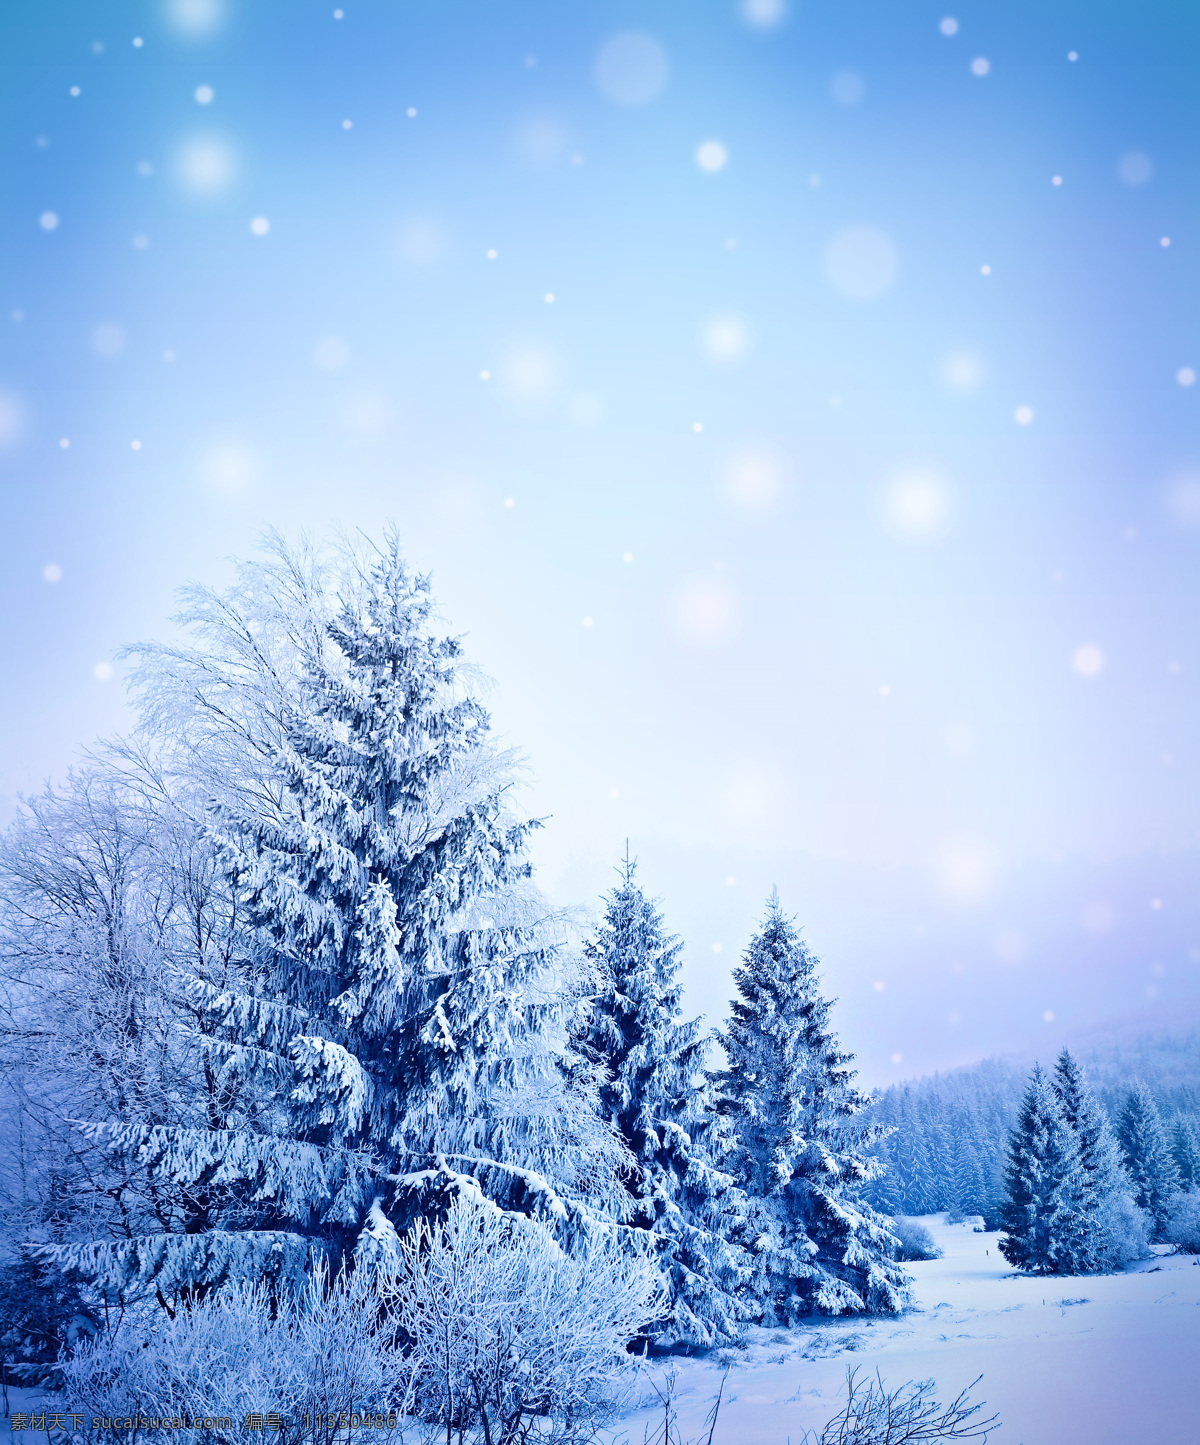 美丽 冬天 雪景 圣诞节素材 新年素材 圣诞节背景 新年背景 雪花背景 美丽雪景 雪地 雪景图片 风景图片